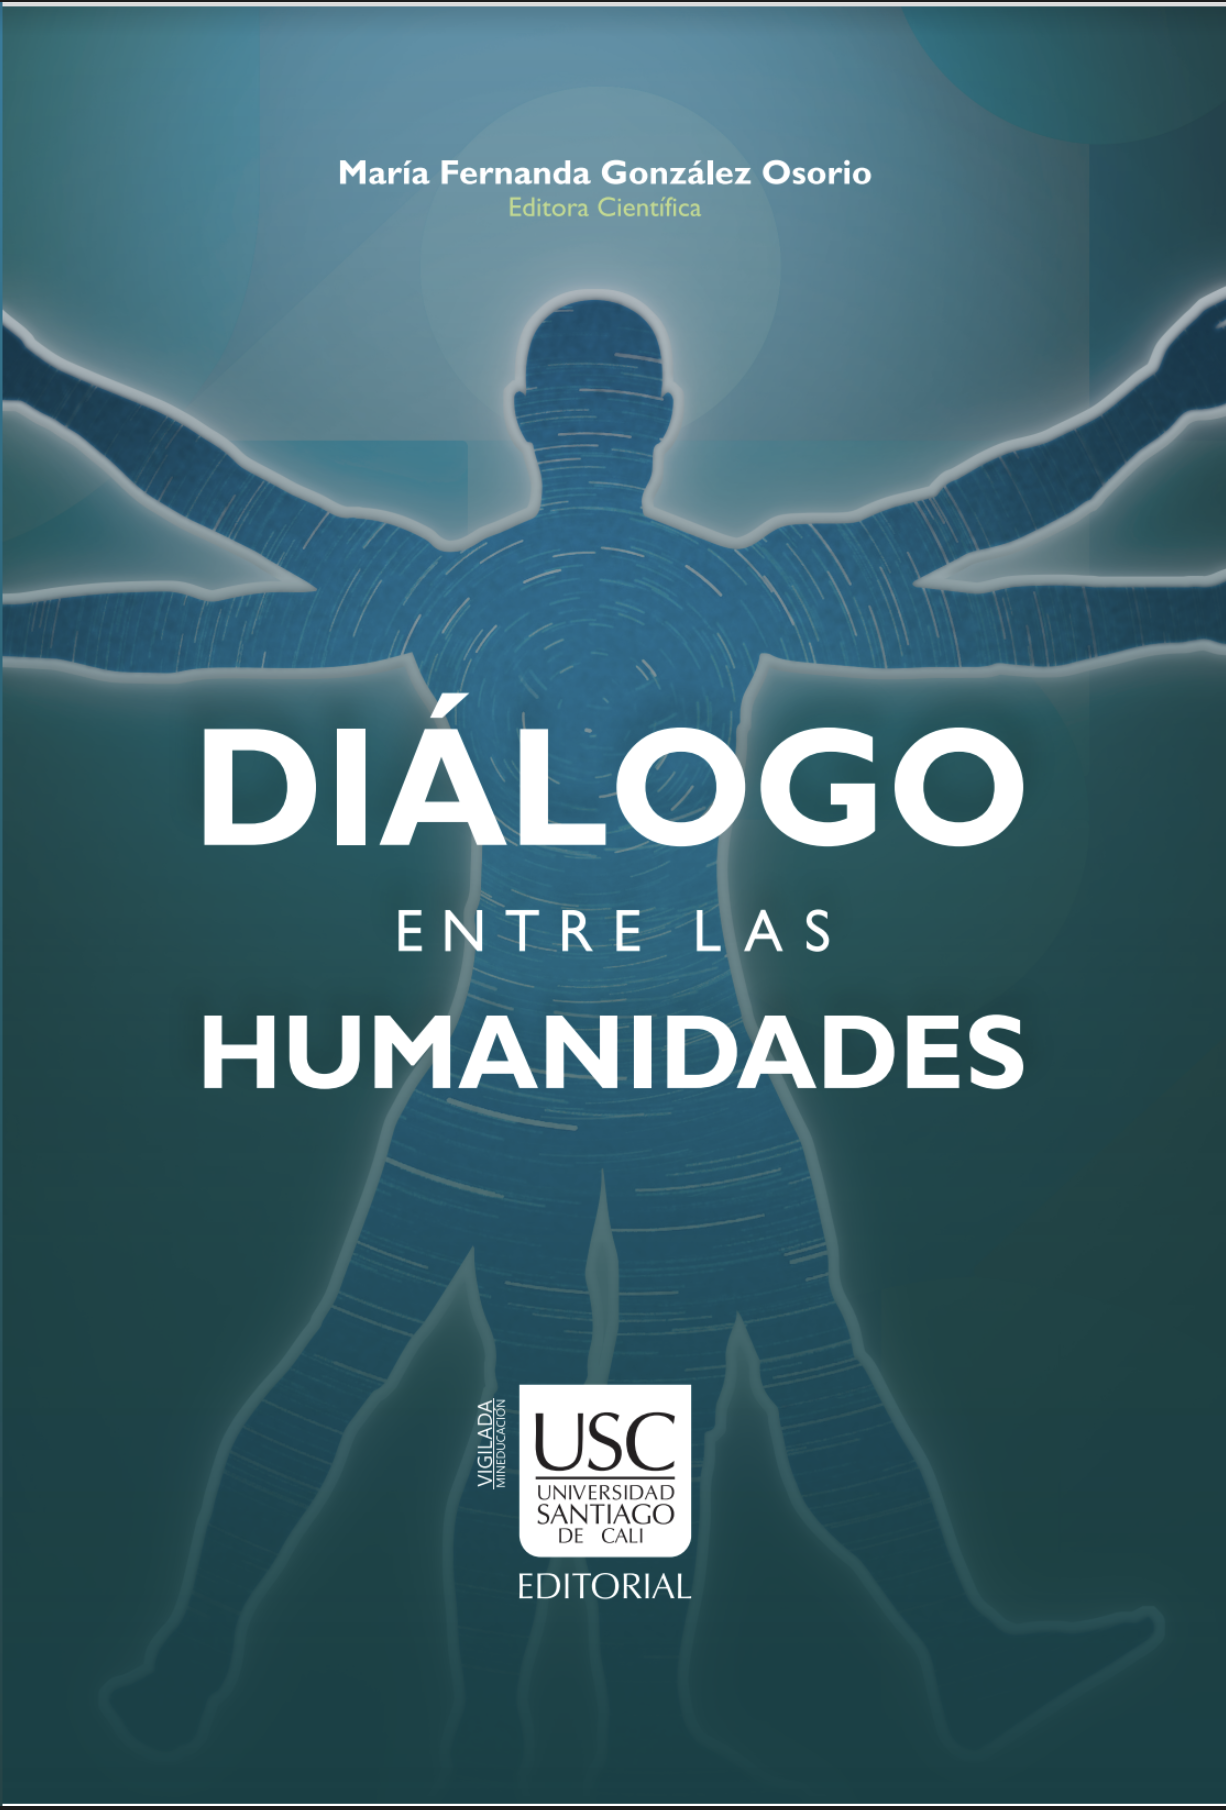 Imagen de portada del libro Diálogo entre las humanidades